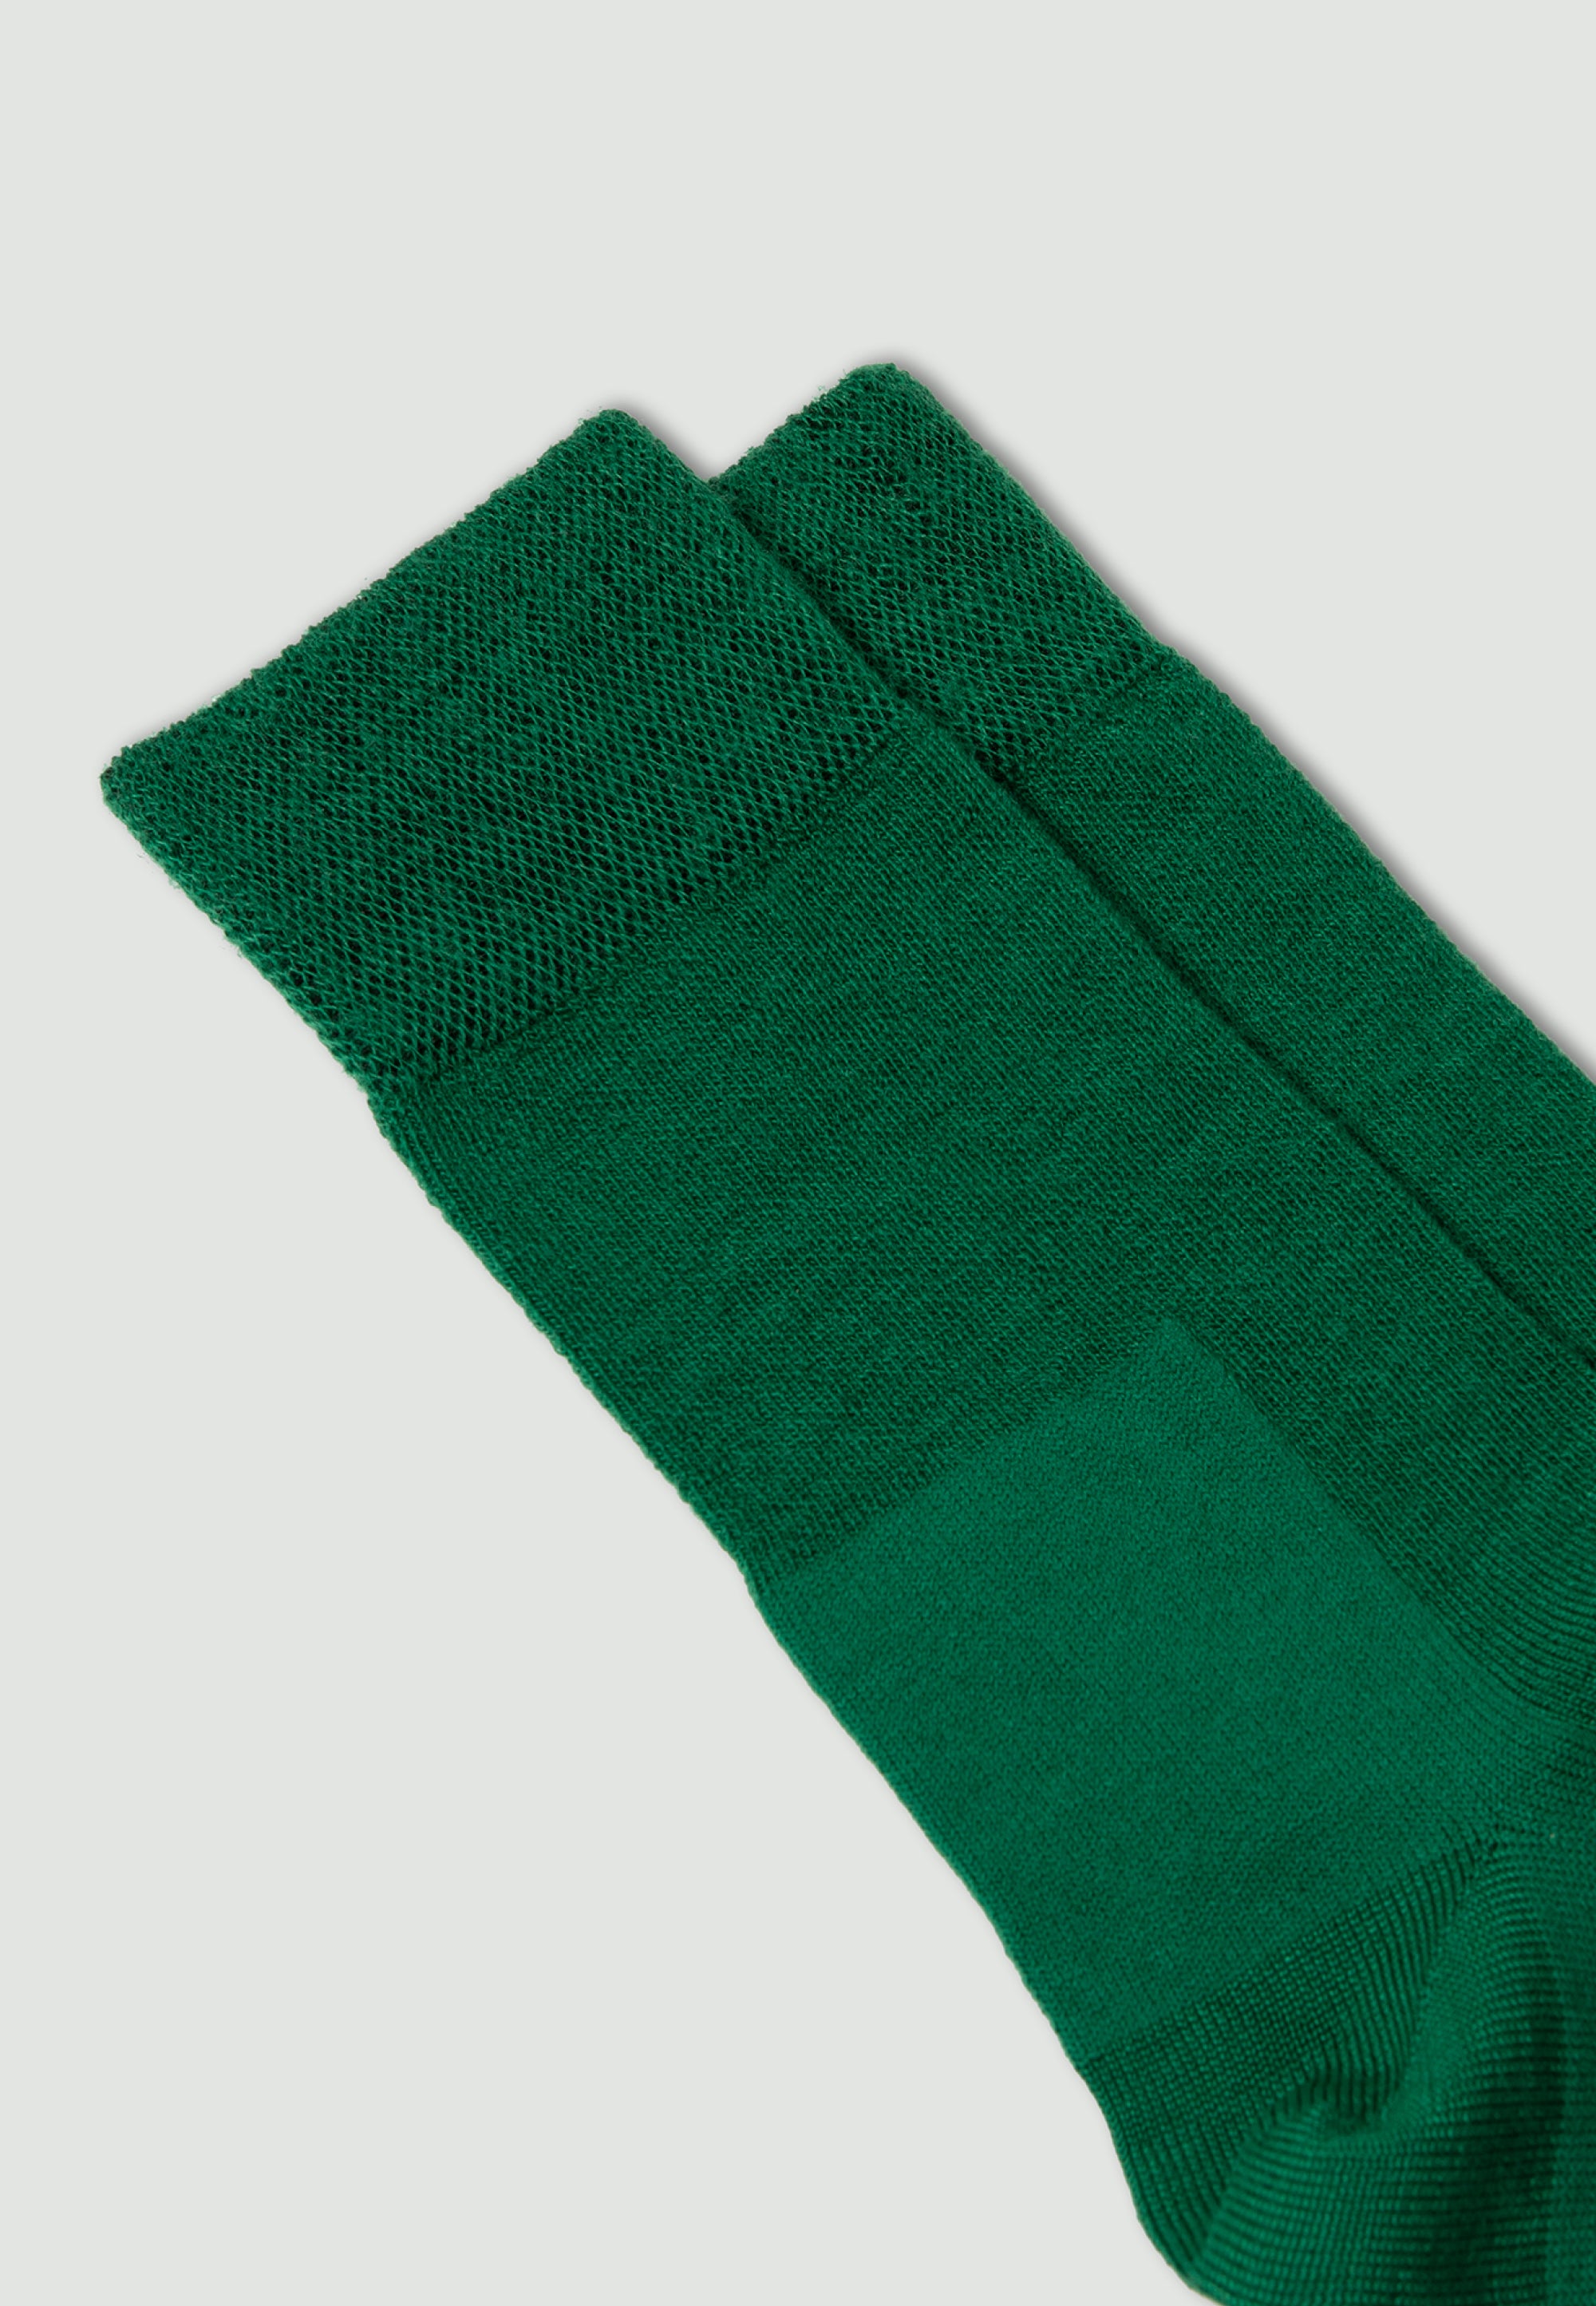 les chaussettes en laine vert gazon 2